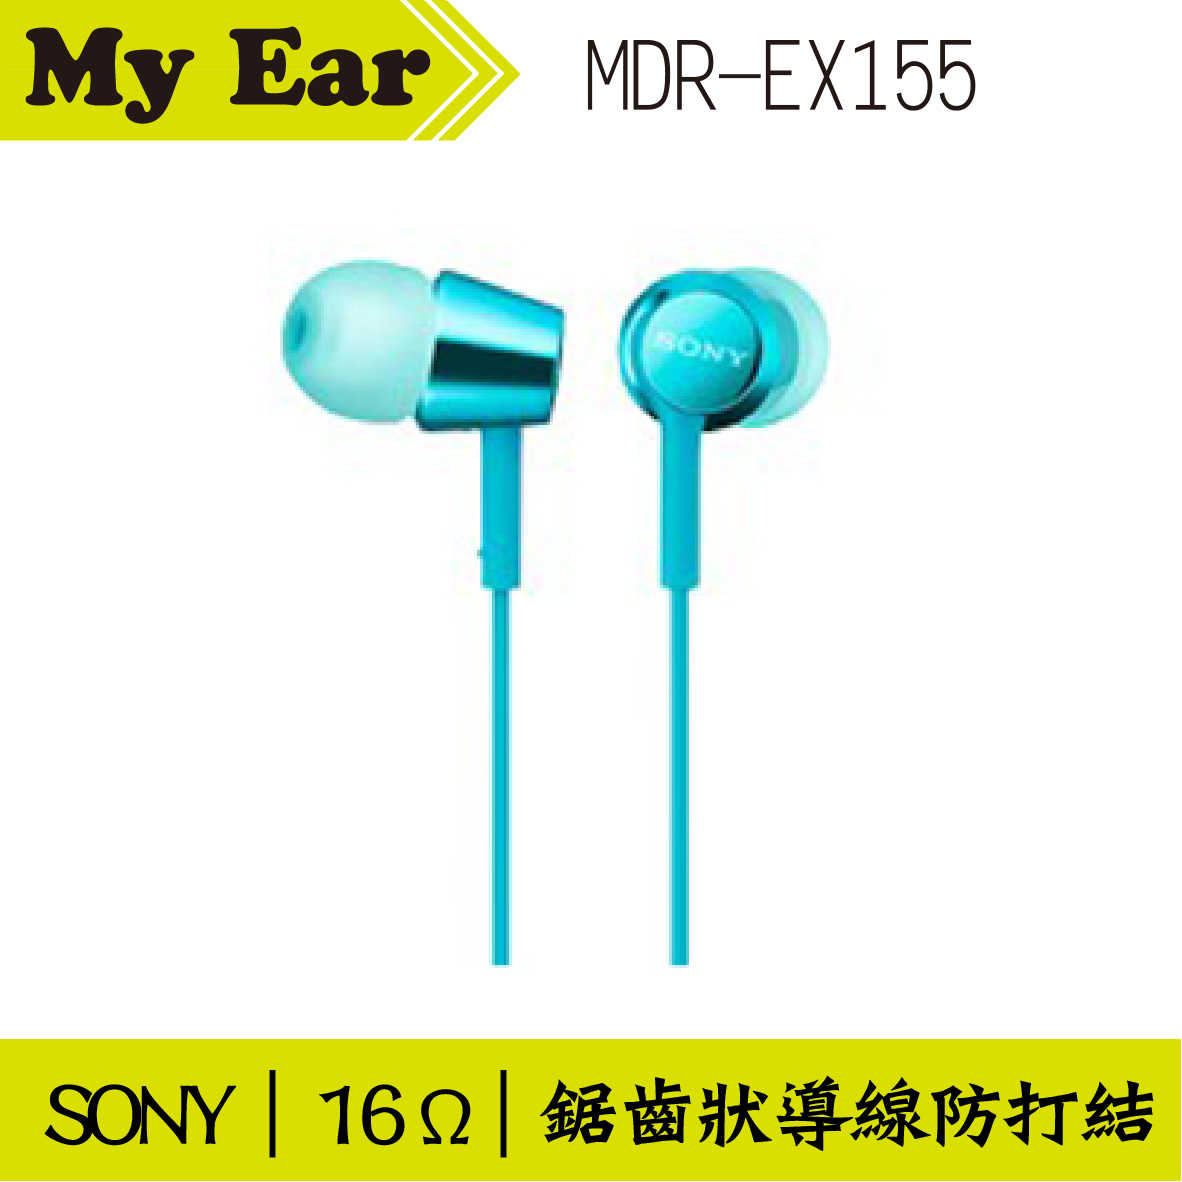 SONY MDR-EX155 入耳式立體聲耳機 淺藍色 | My Ear 耳機專門店